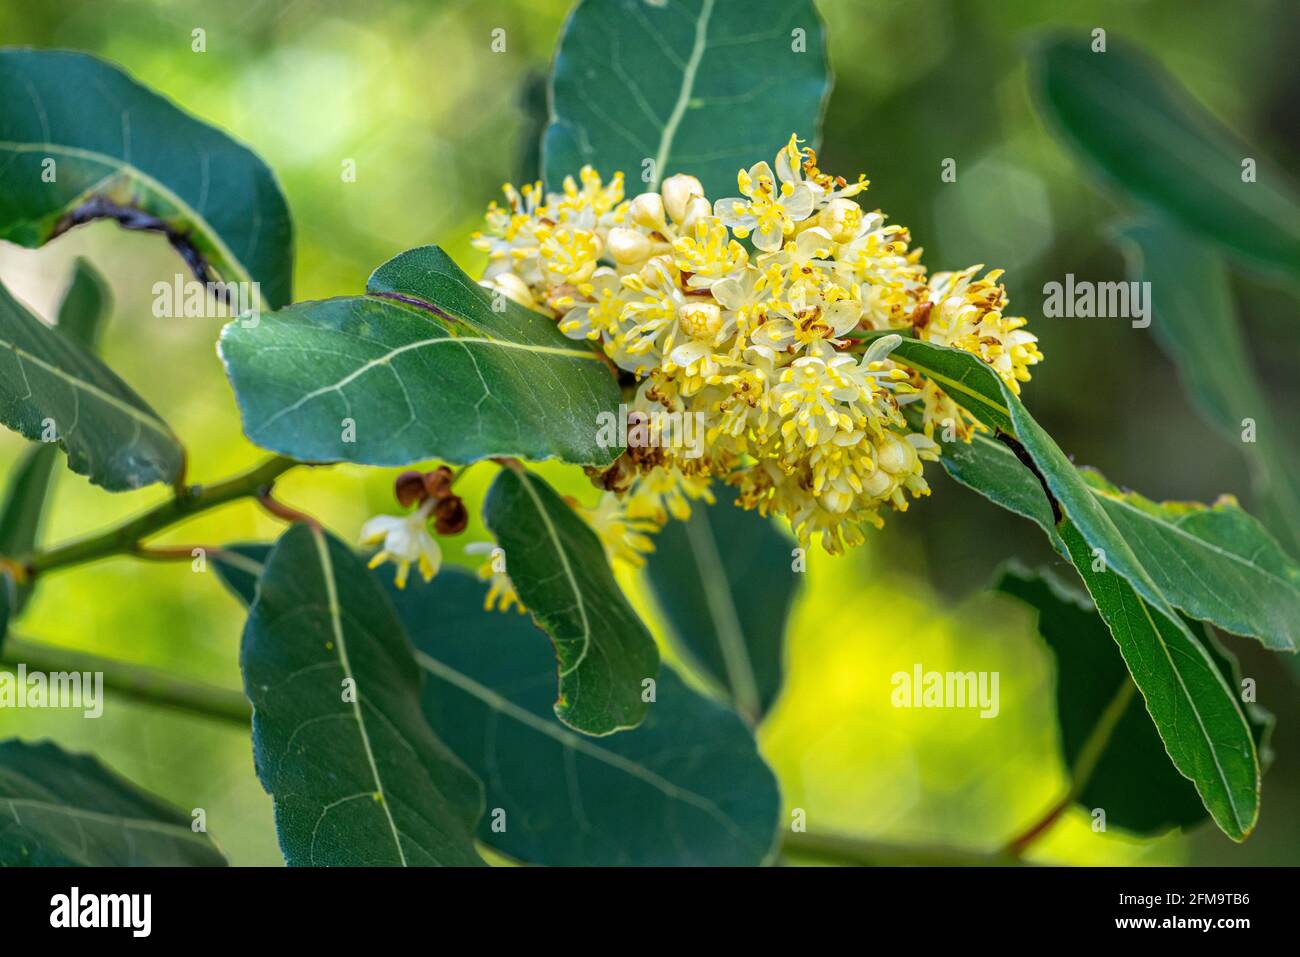 Der blühende Lorbeer, Laurus nobilis L., ist eine aromatische und offizinale Pflanze, die zur Familie der Lauraceae gehört. Abruzzen, Italien, Europa Stockfoto